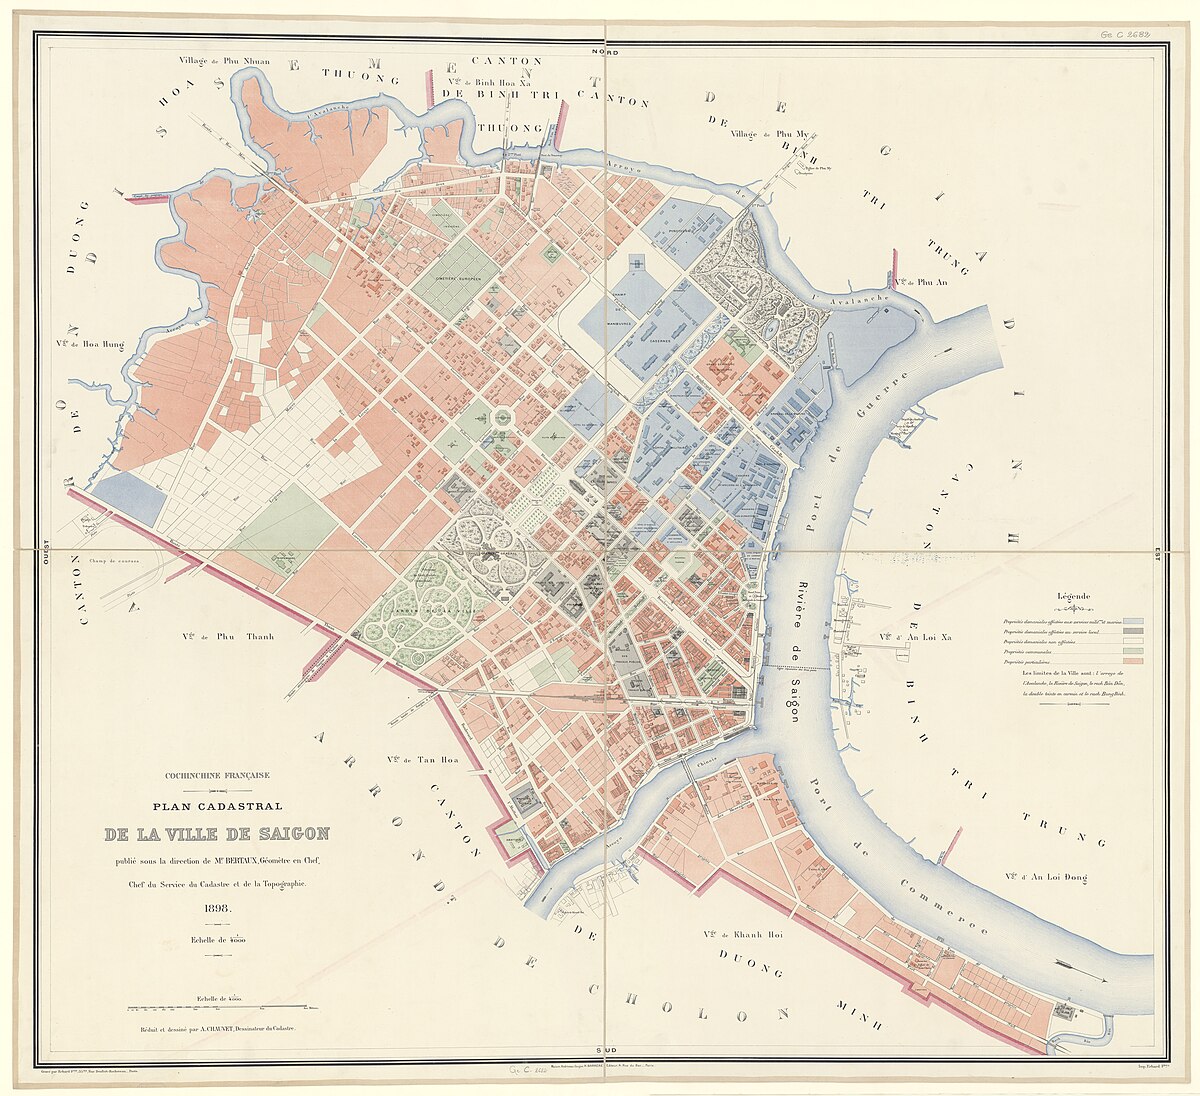 Khu vực Thủ Thiêm với chợ và nhà thờ, lúc bấy giờ thuộc làng An Lợi Xã, trên bản đồ Sài Gòn năm 1898